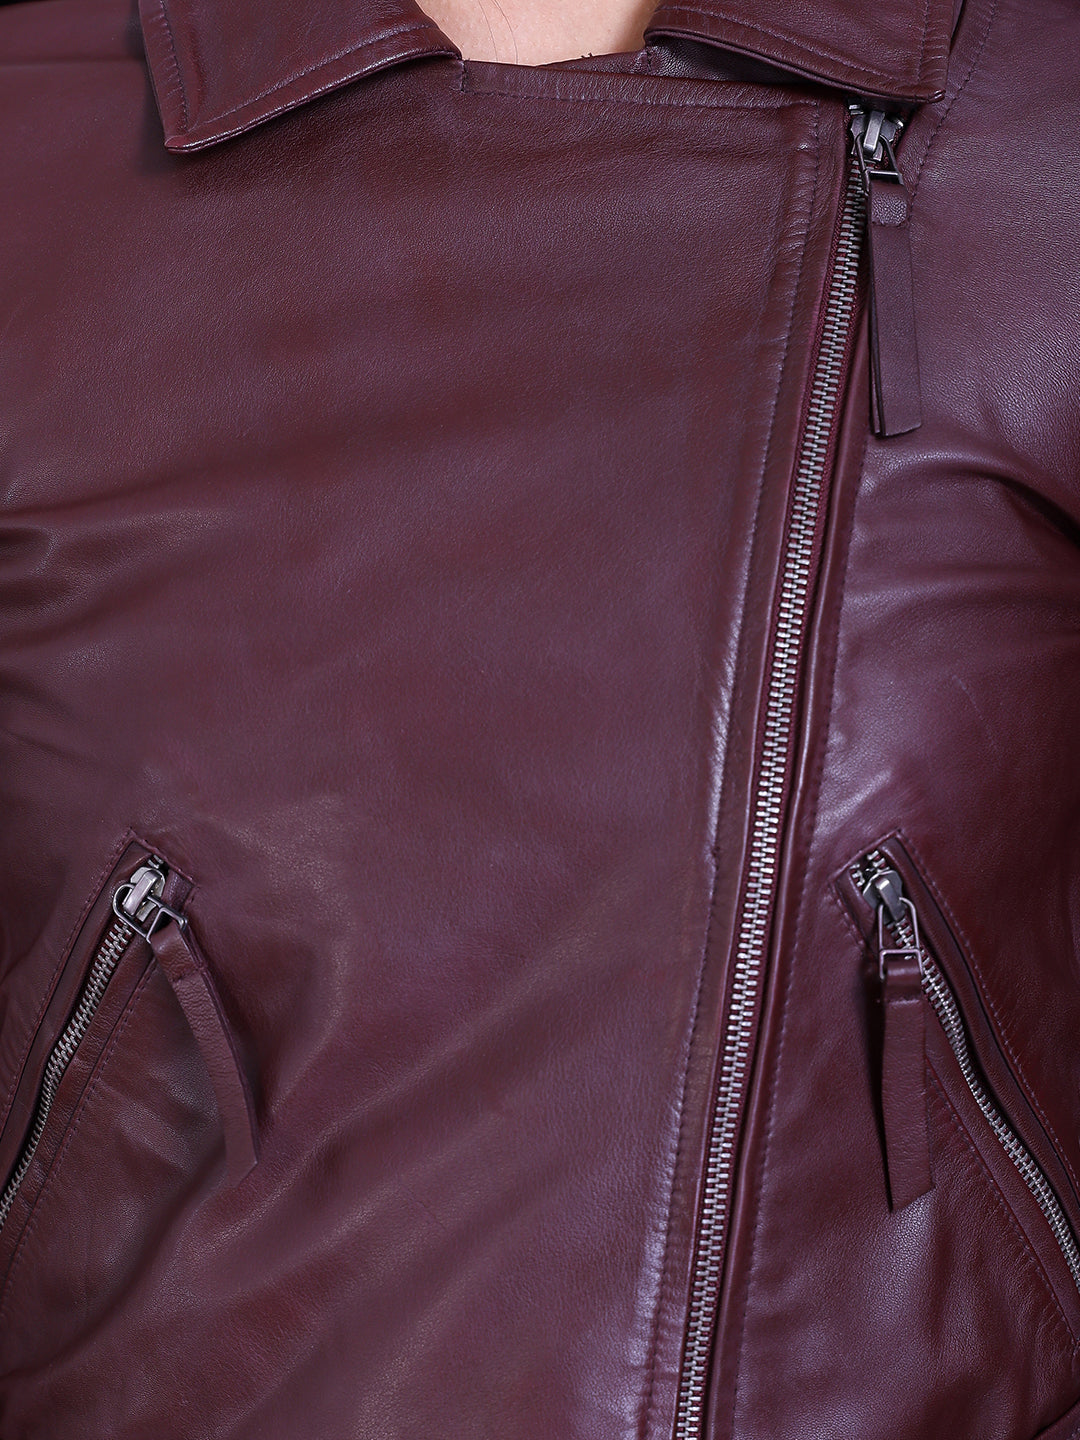 Justanned Burgundy Belted Biker Leather Jacket